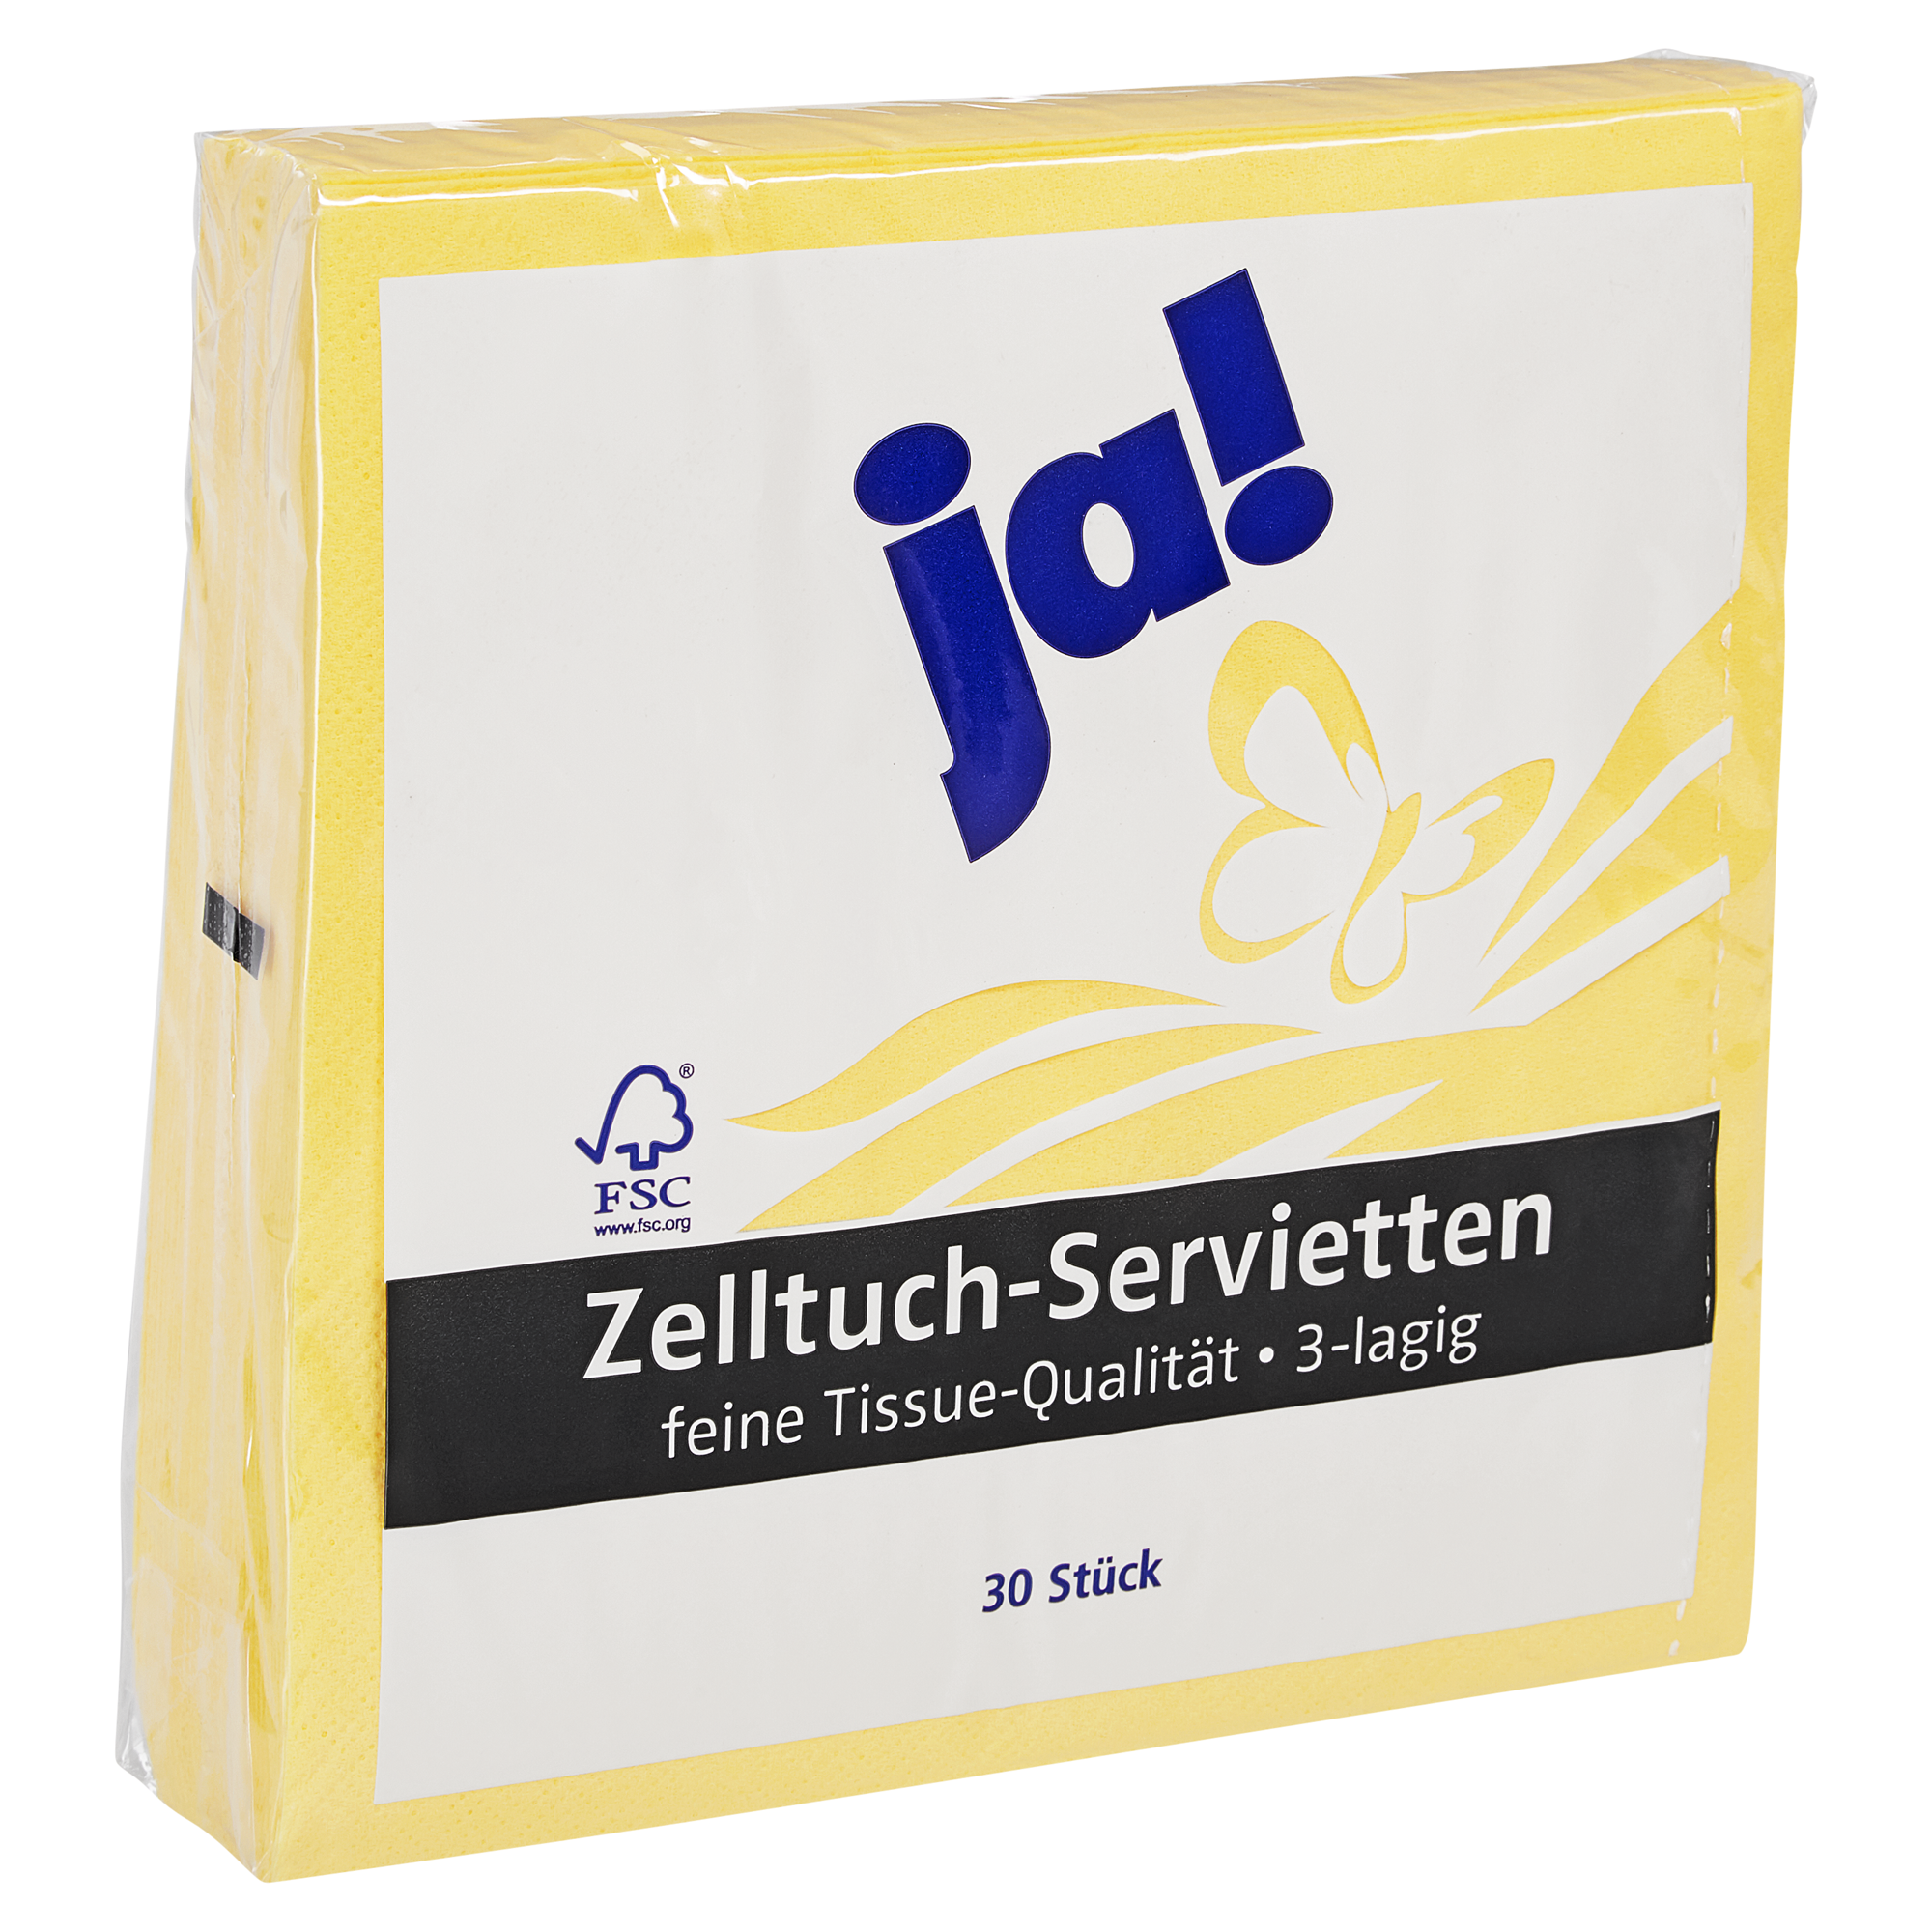 Zelltuch-Servietten 33 x 33 cm 30 Stück gelb + product picture